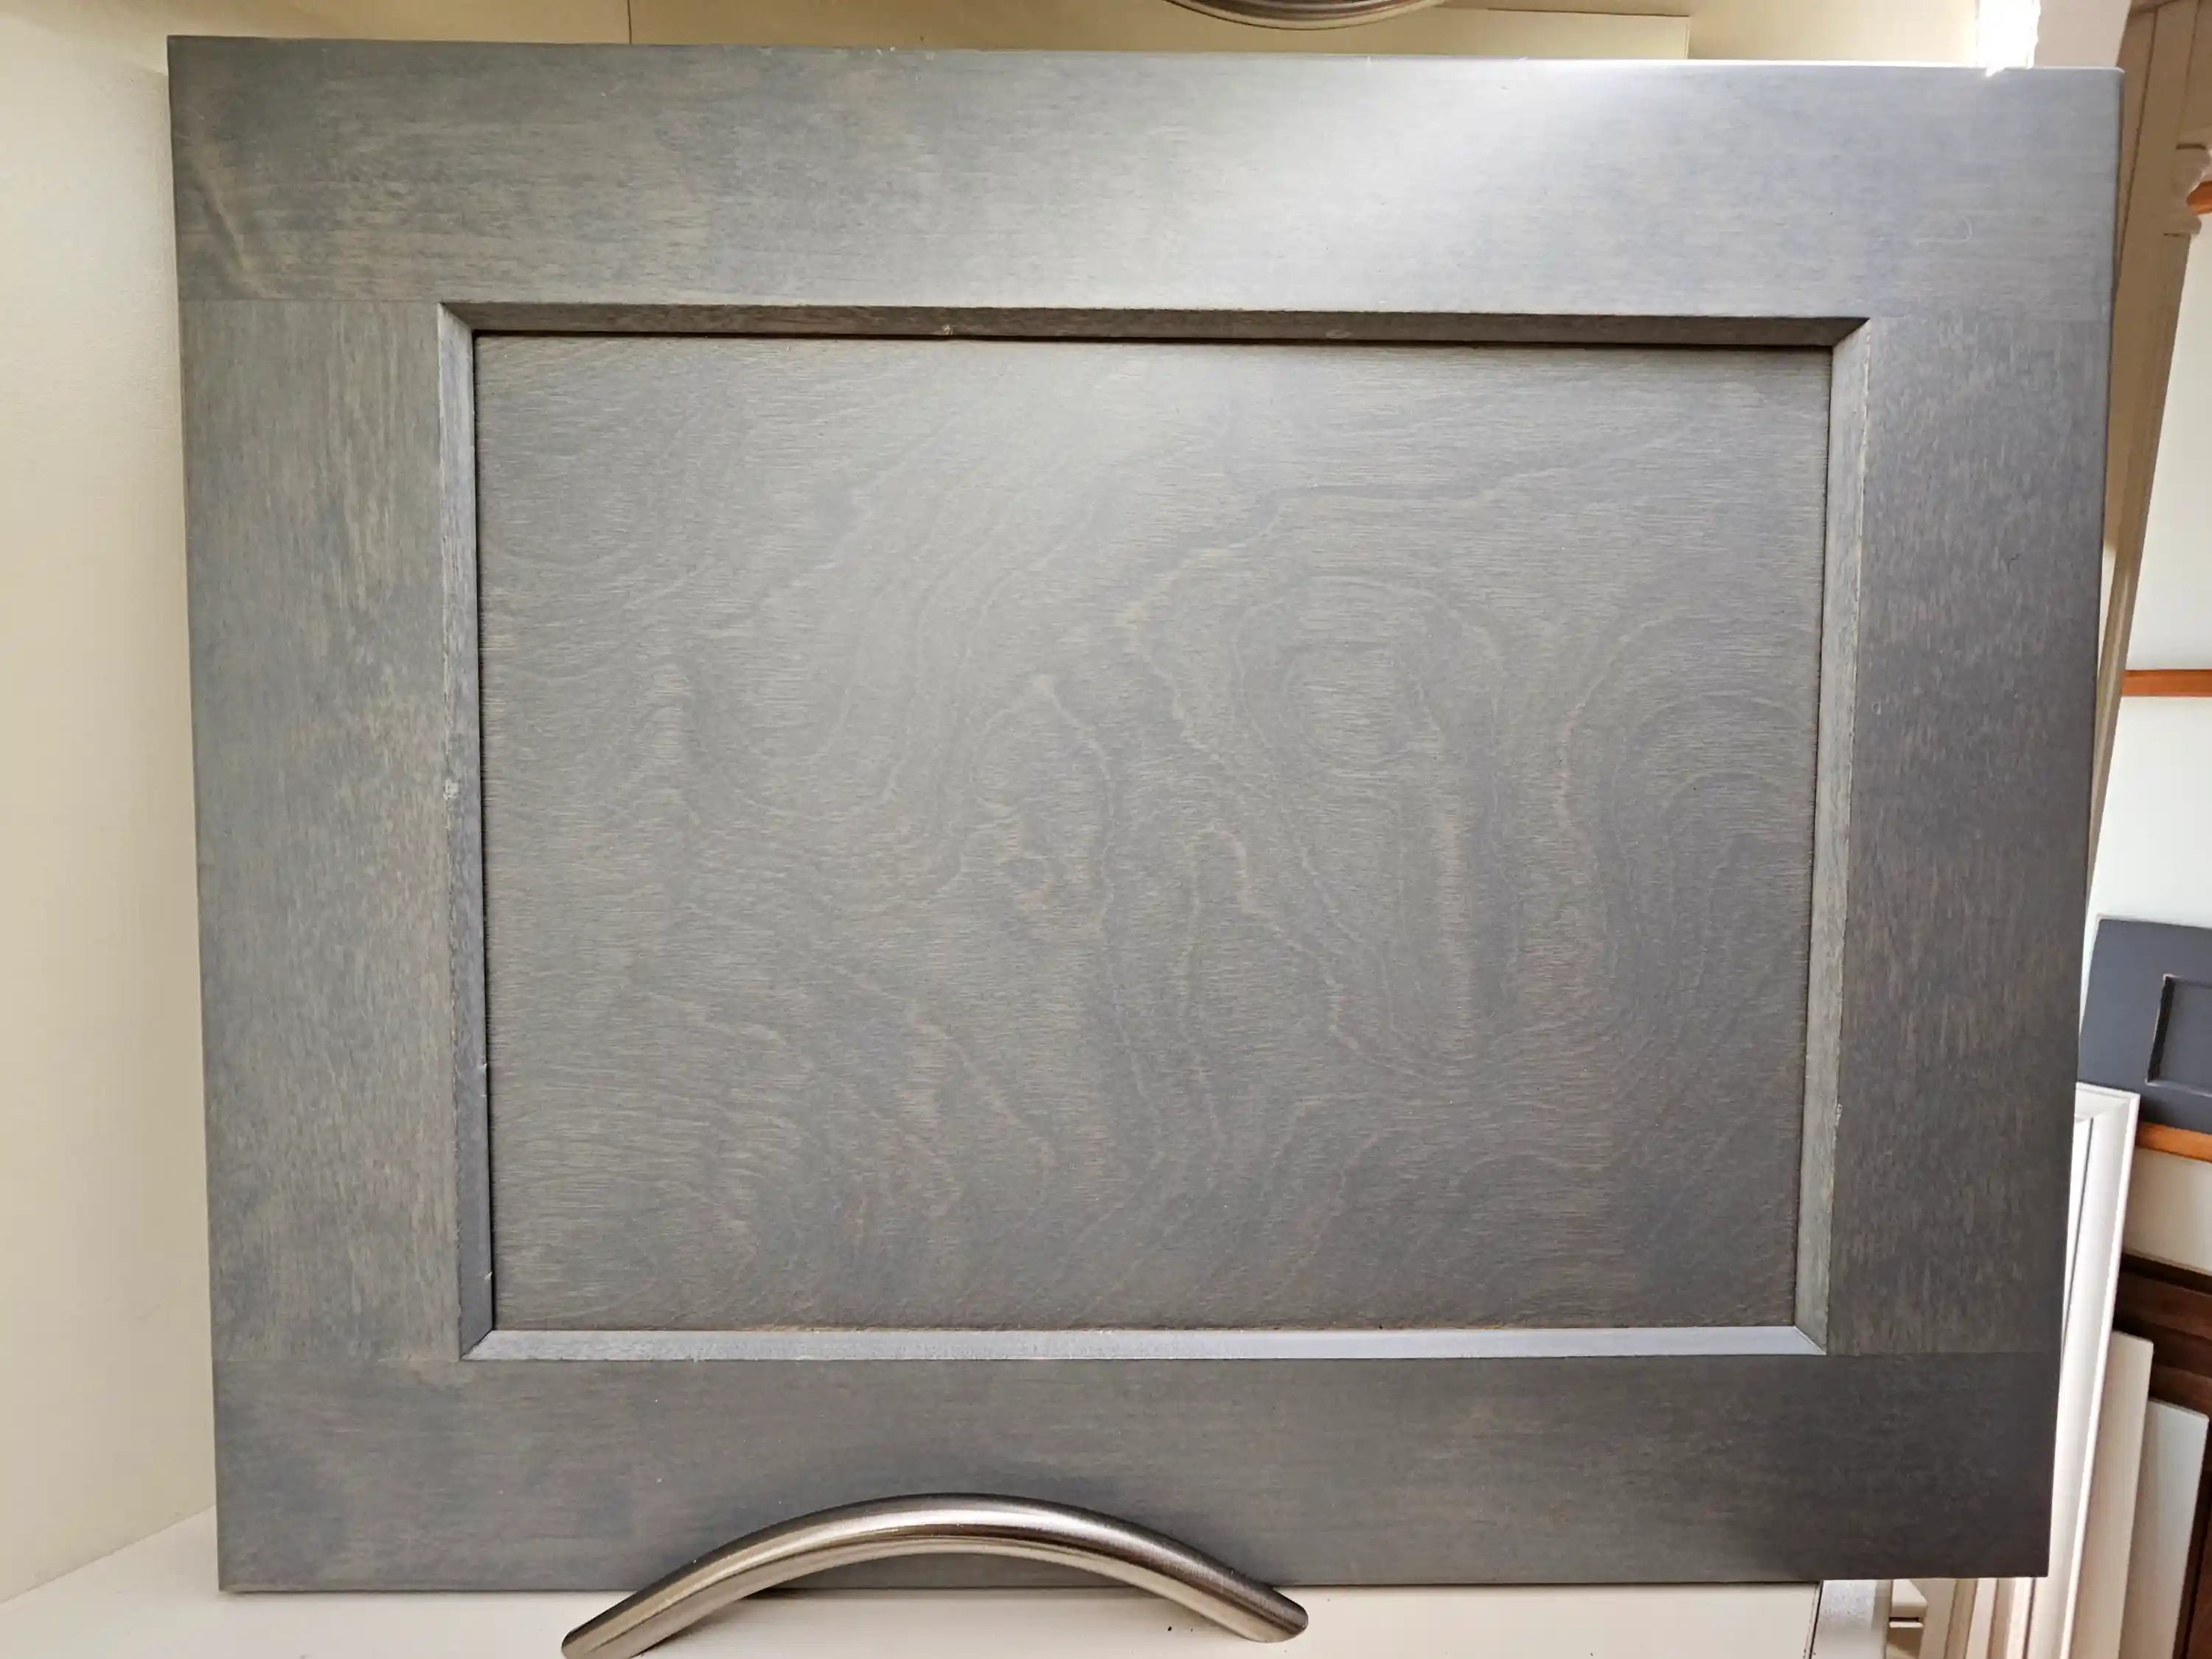 Gray kitchen cabinet